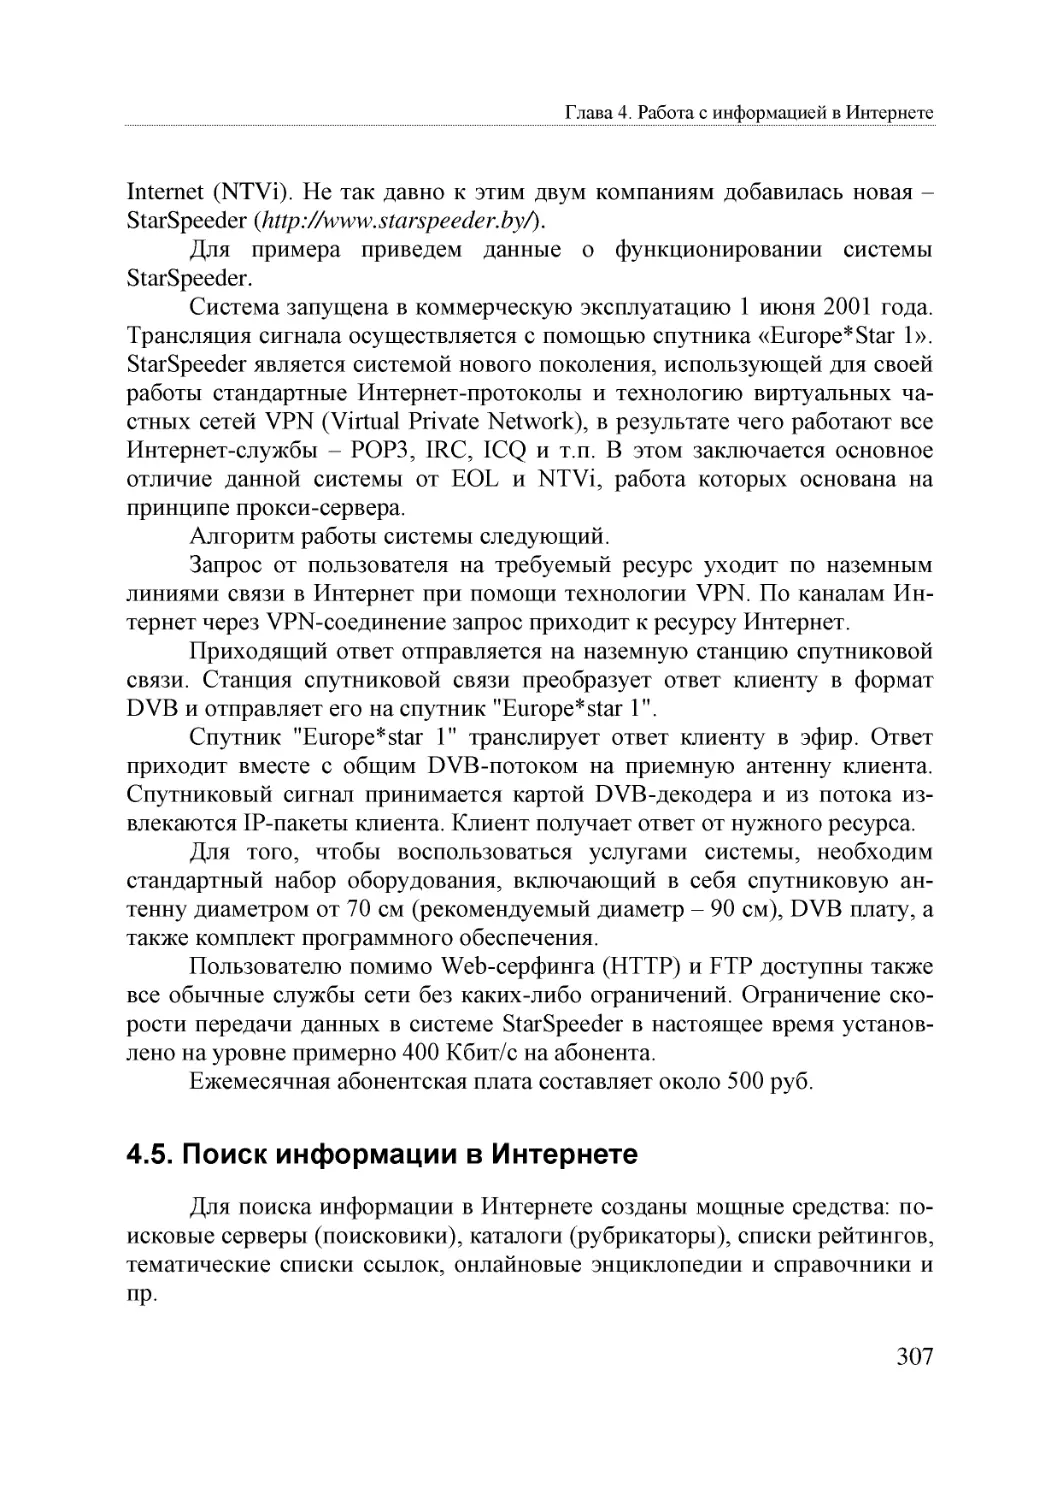 Informatika_Uchebnik_dlya_vuzov_2010 307